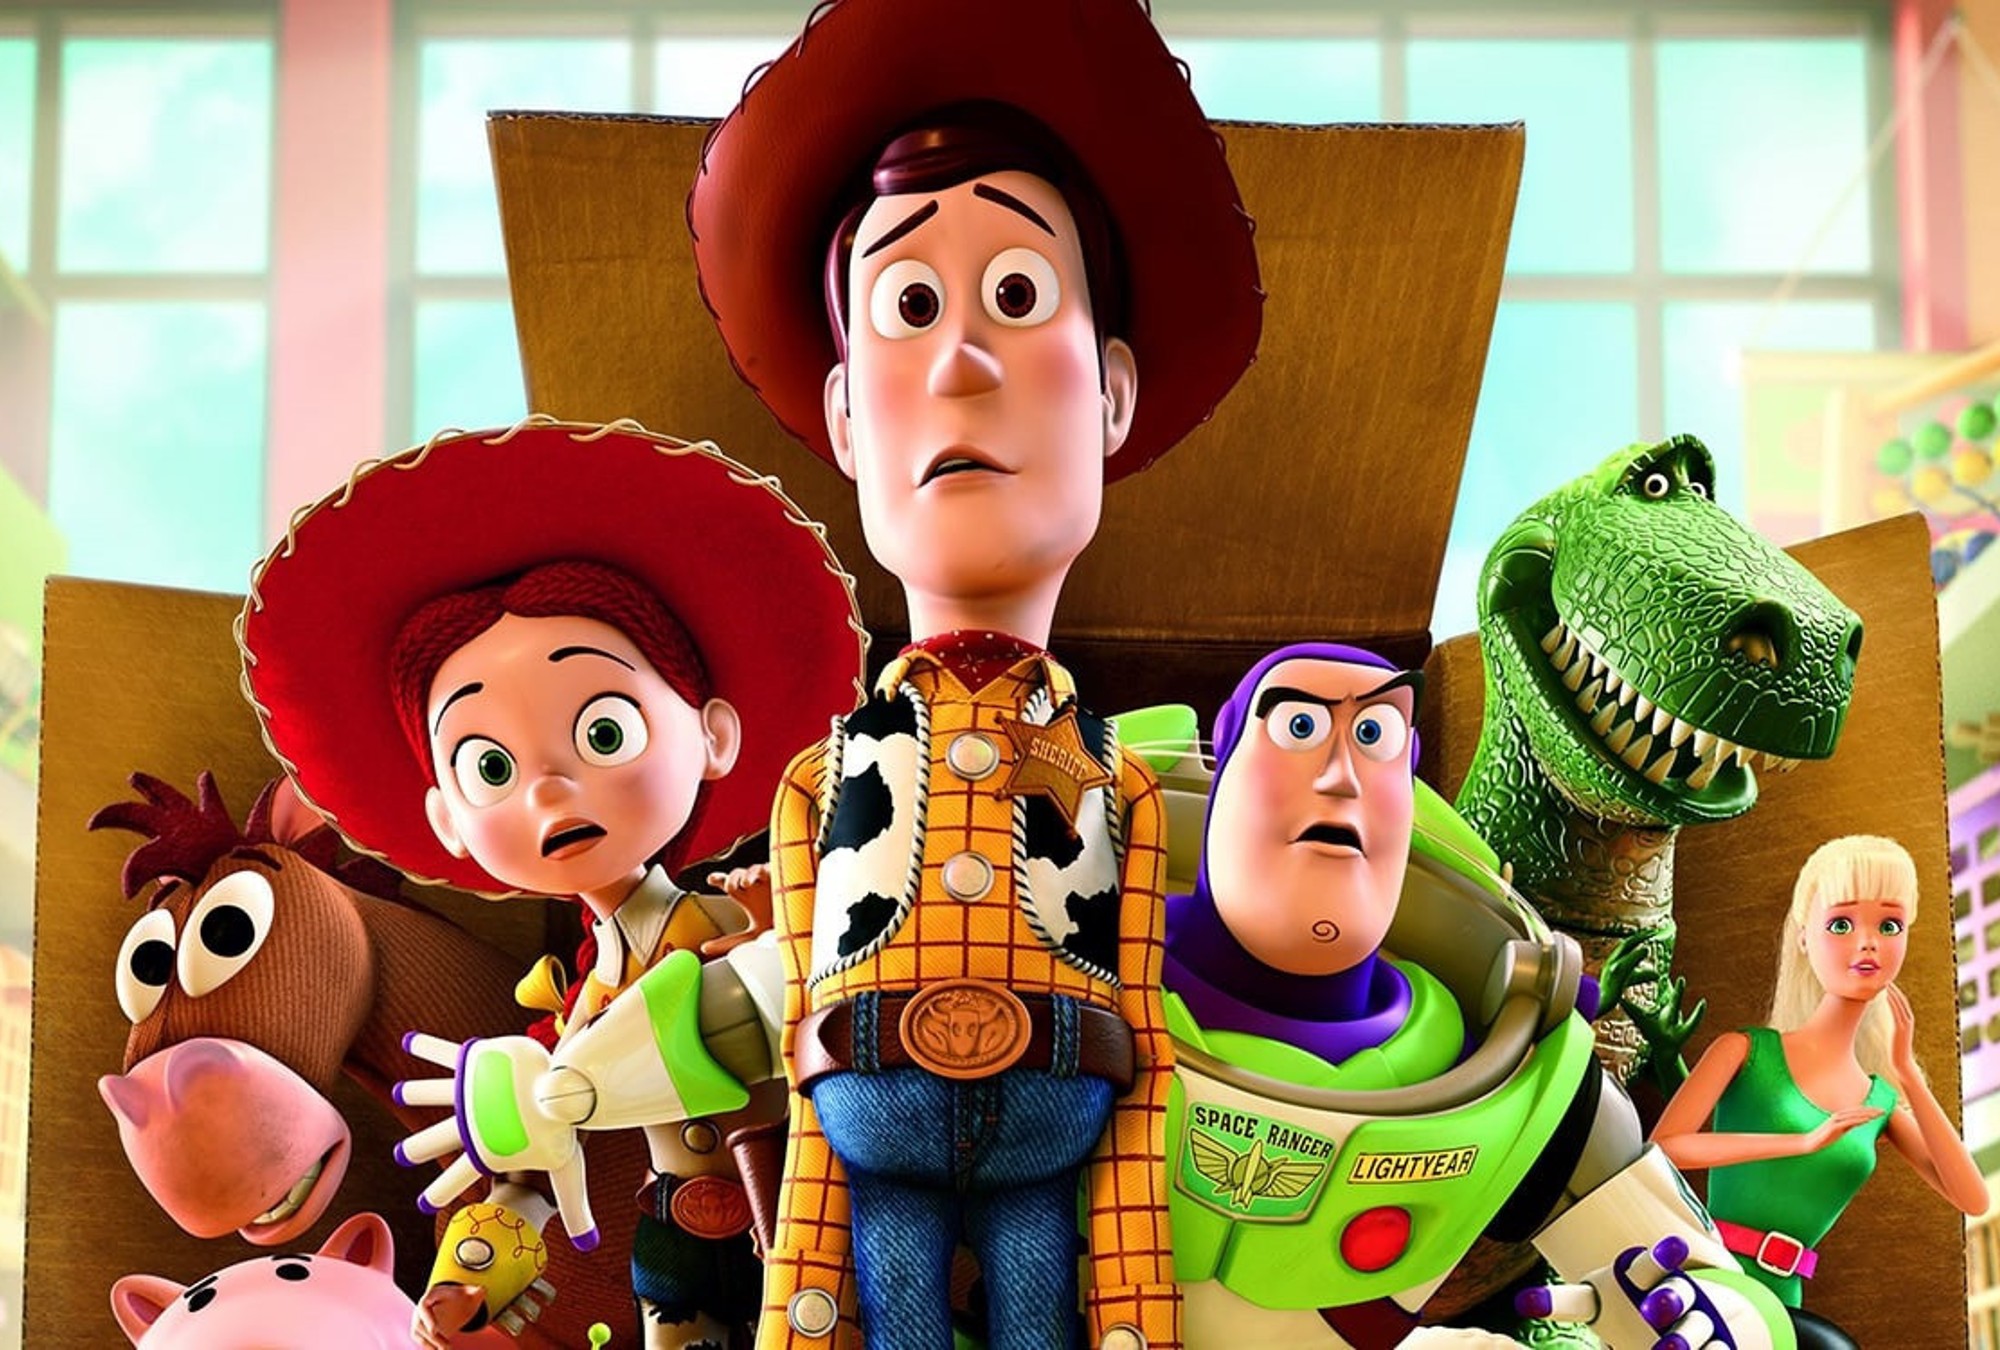 Топ 10 лучших мультфильмов в мире. История игрушек 3 большой побег. История игрушек: большой побег / Toy story 3. Disney Pixar Toy story 3.